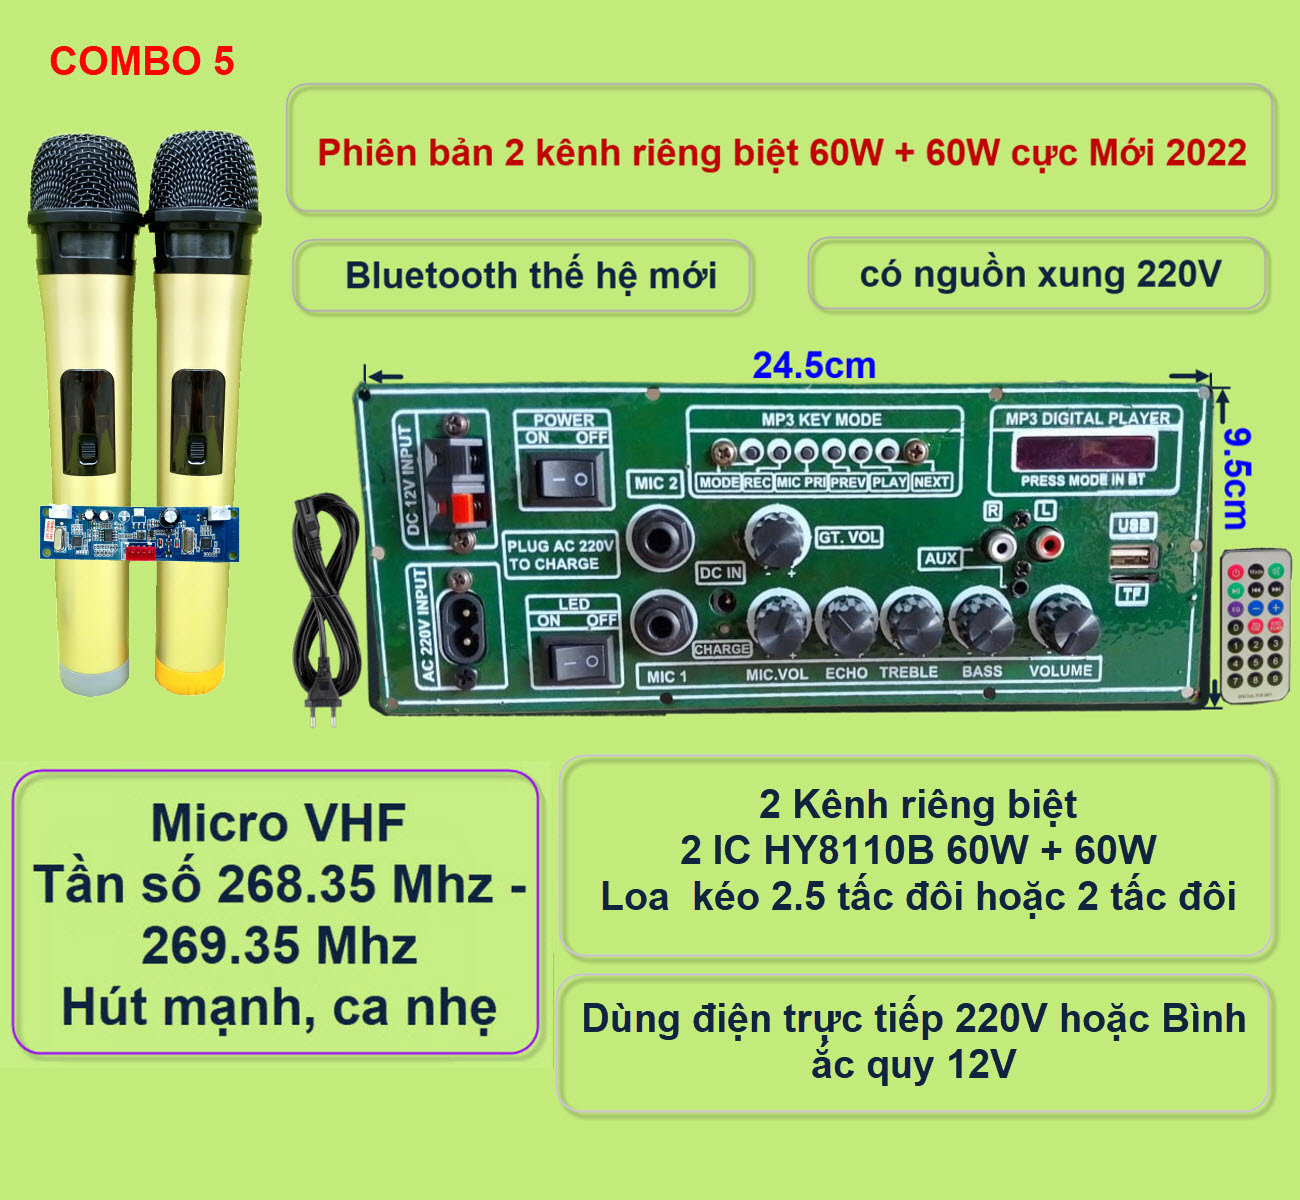 Mạch loa kéo 2 kênh riêng biệt 2 IC HY8110B 60W + 60W có nguồn xung 220V – Bluetooth thế hệ mới kèm micro đôi